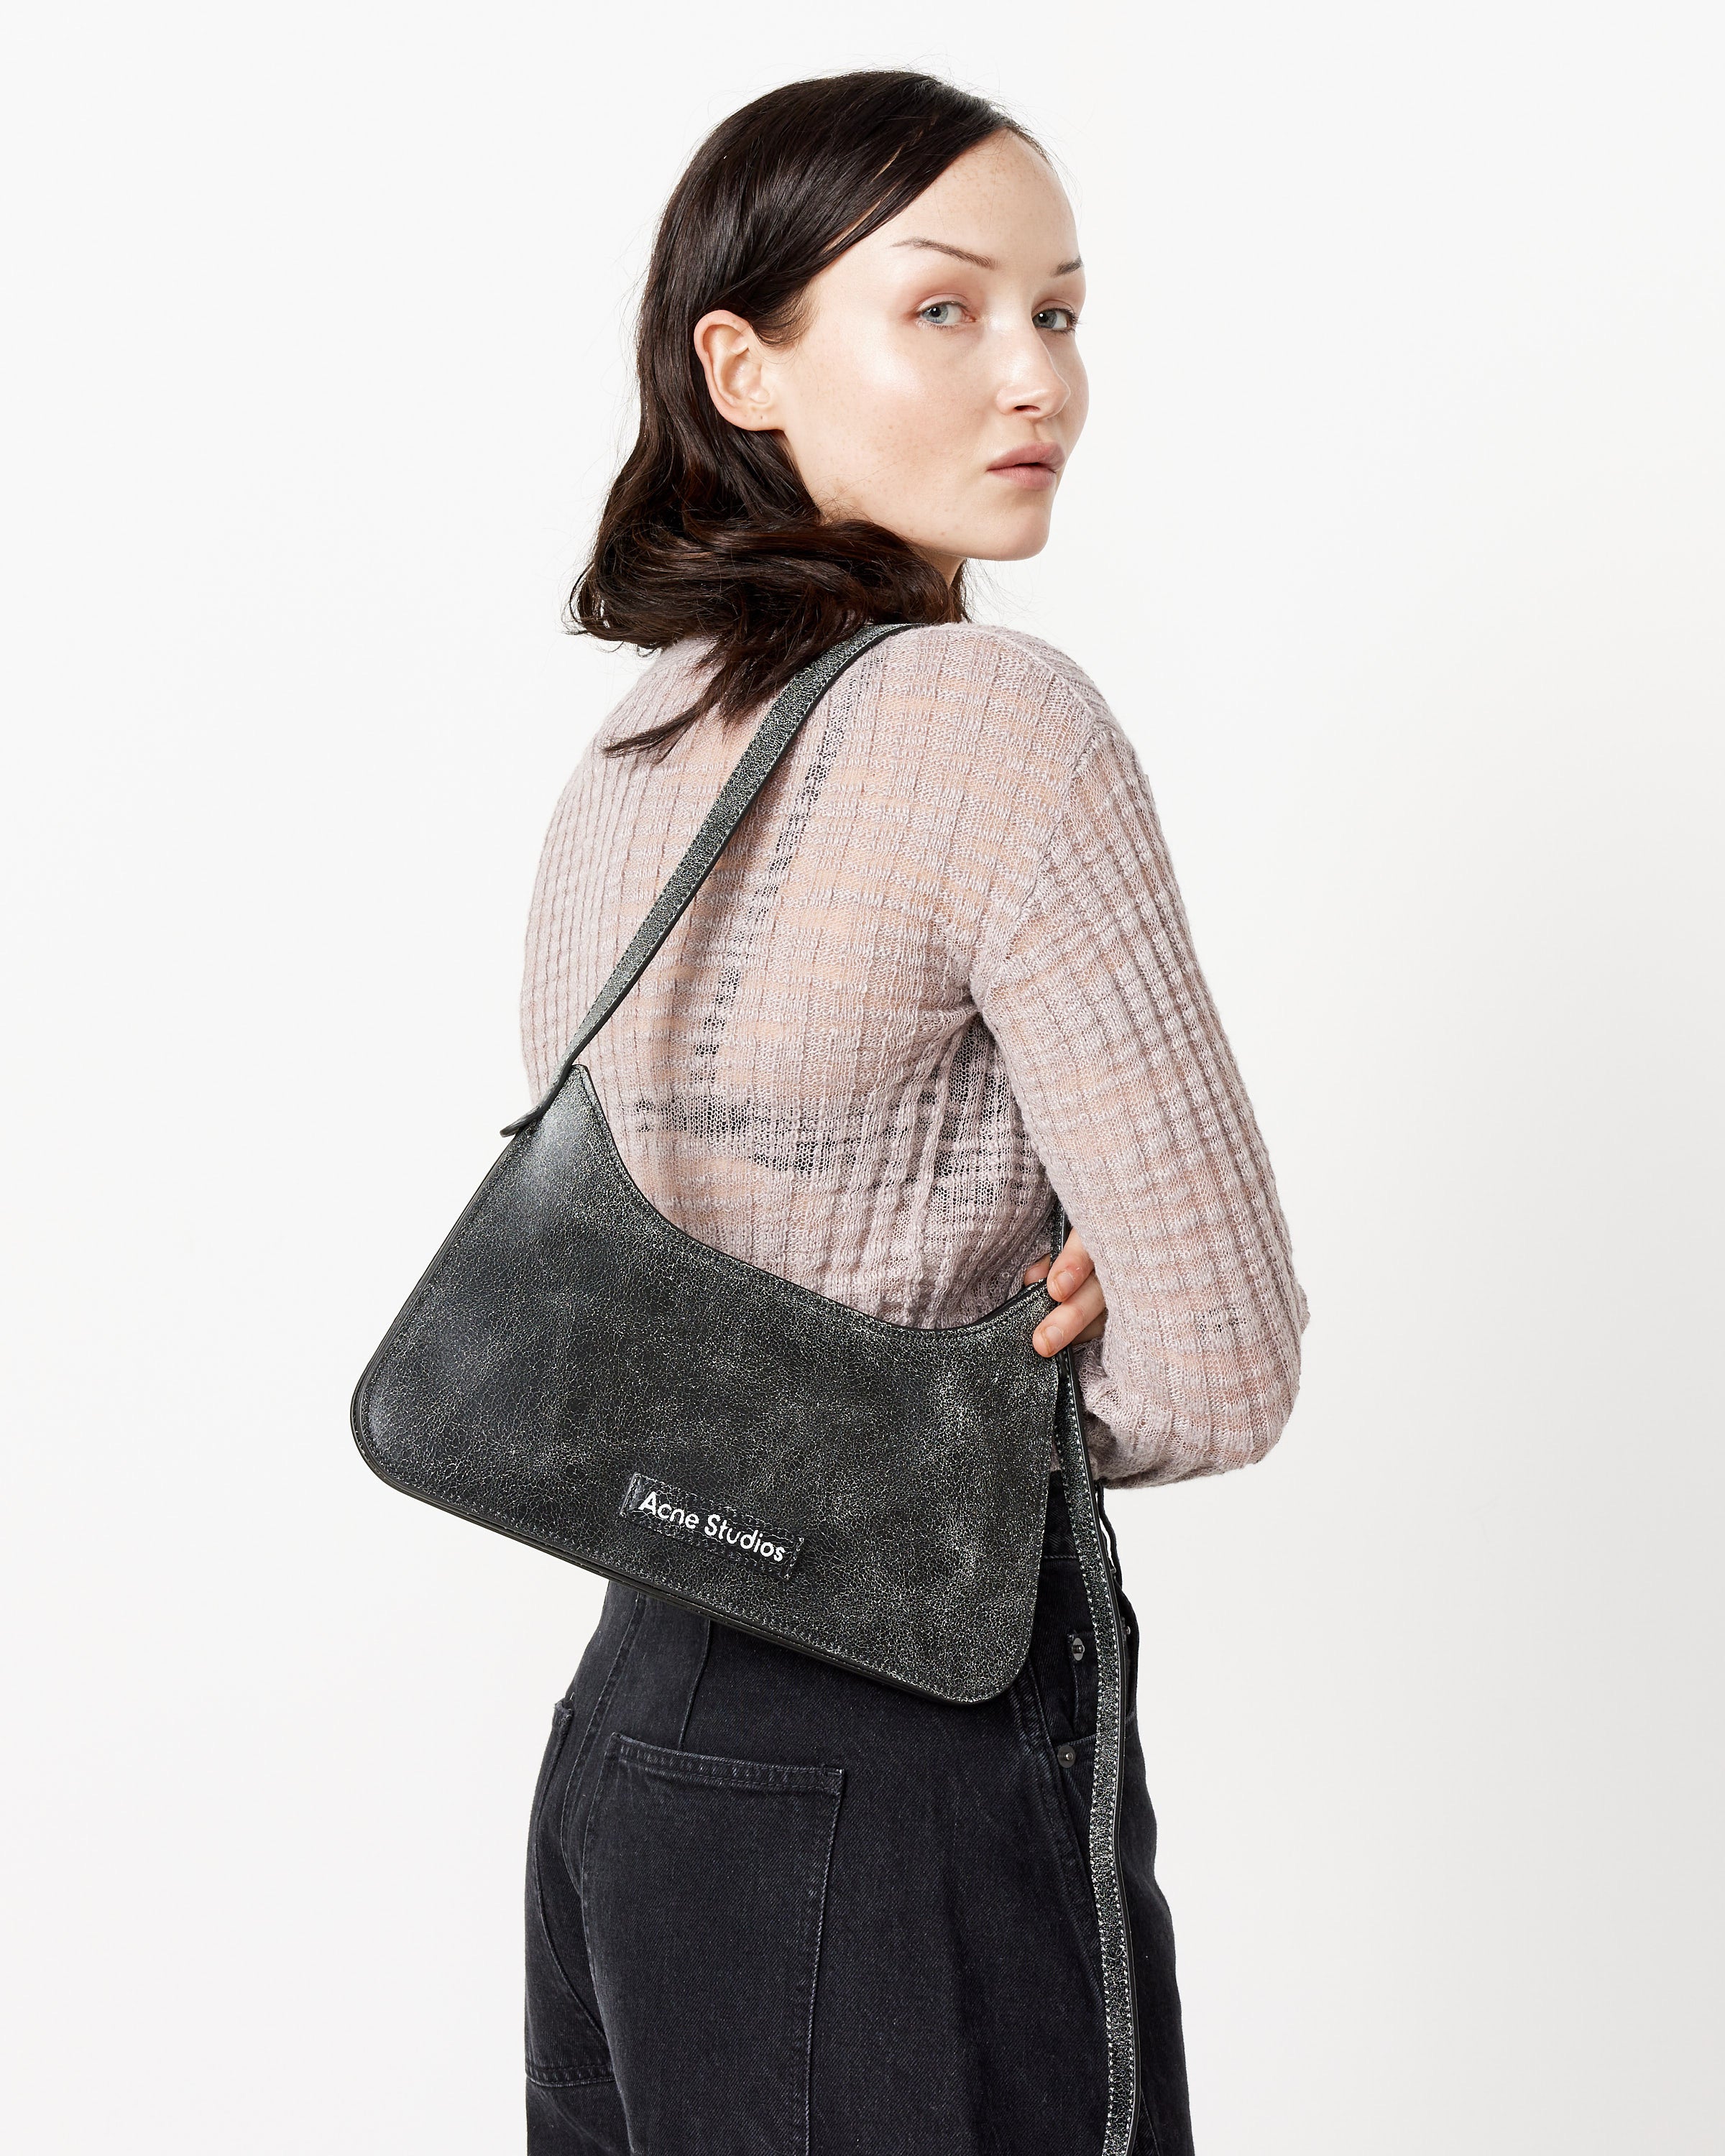 Acne Studios Platt Mini Shoulder Bag